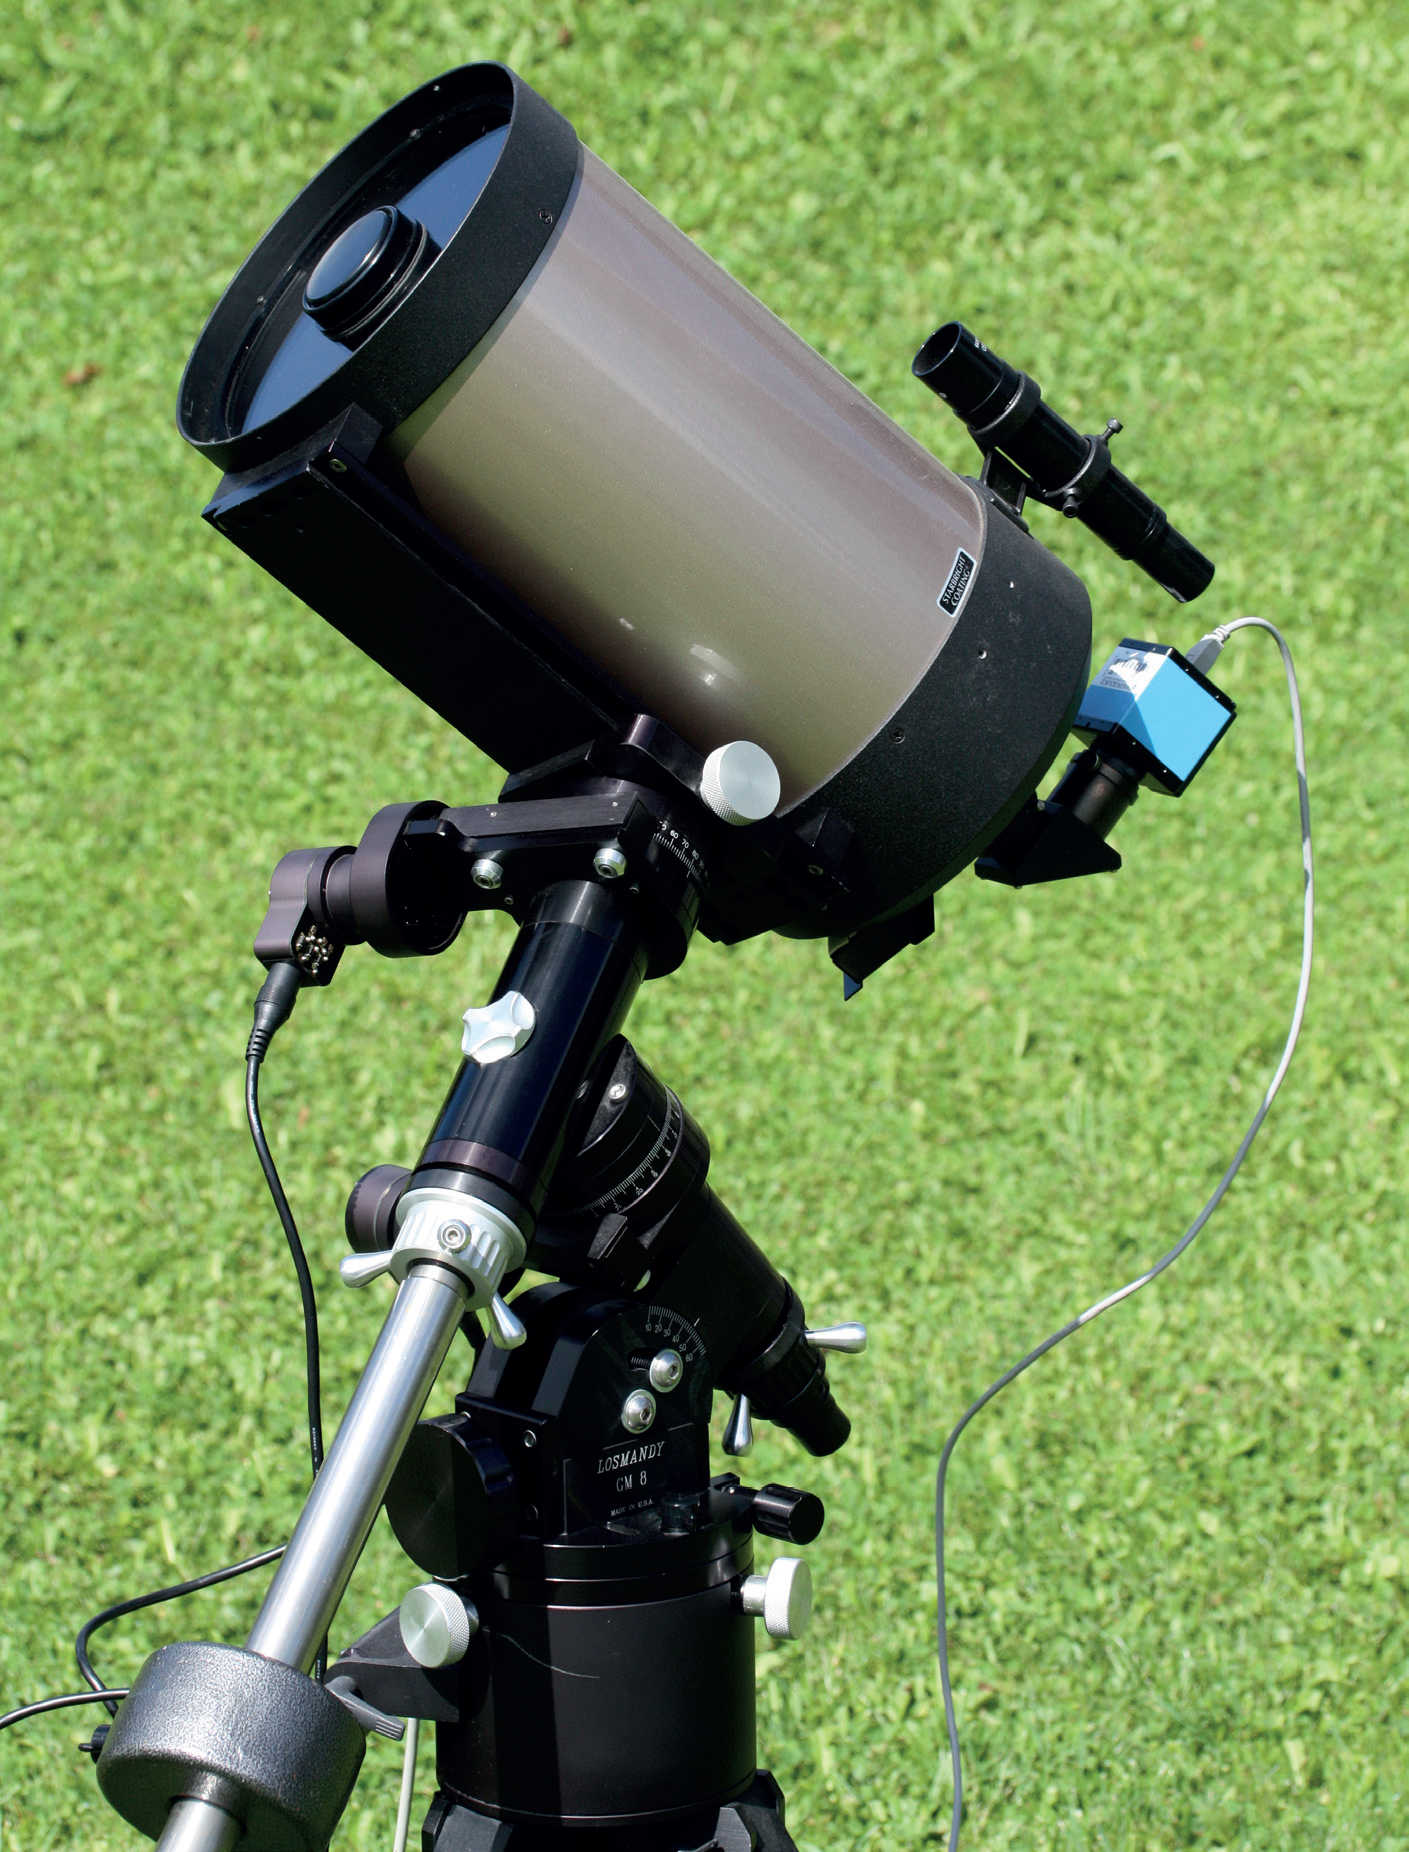 Telescoapele compacte, cu distanță focală mare, cum ar fi telescopul Schmidt-Cassegrain prezentat aici, sunt perfecte pentru fotografia planetară. Montura germană cu motor permite ghidarea precisă a unității optice și, astfel, secvențe de expunere mai lungi cu camera CCD conectată. U. Dittler